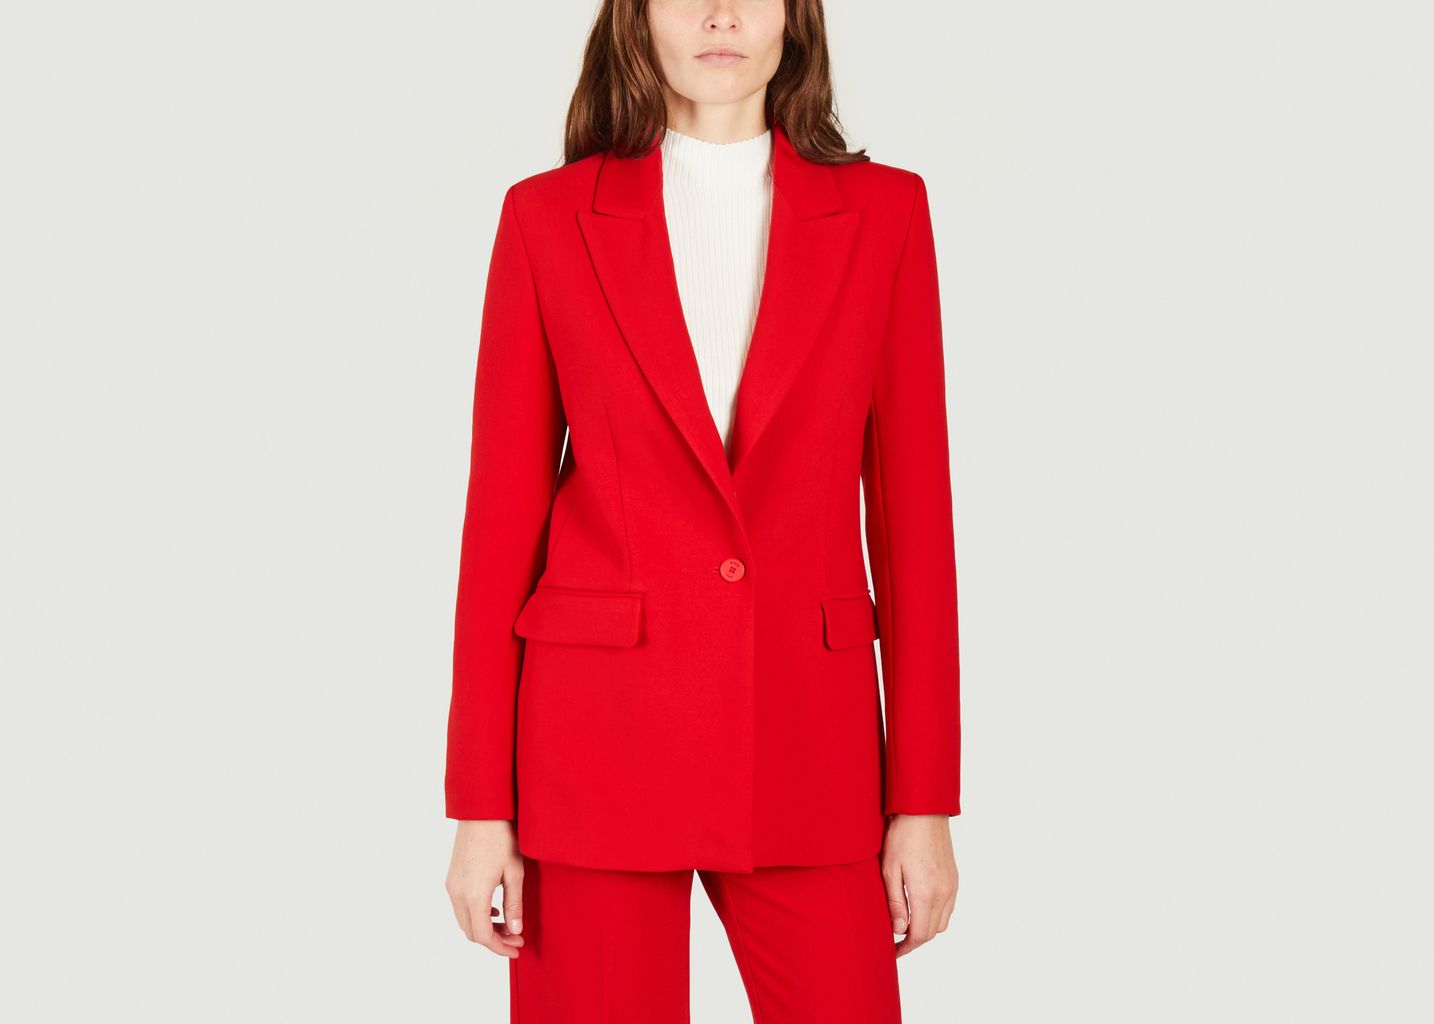 Valdena red suit jacket - Maje